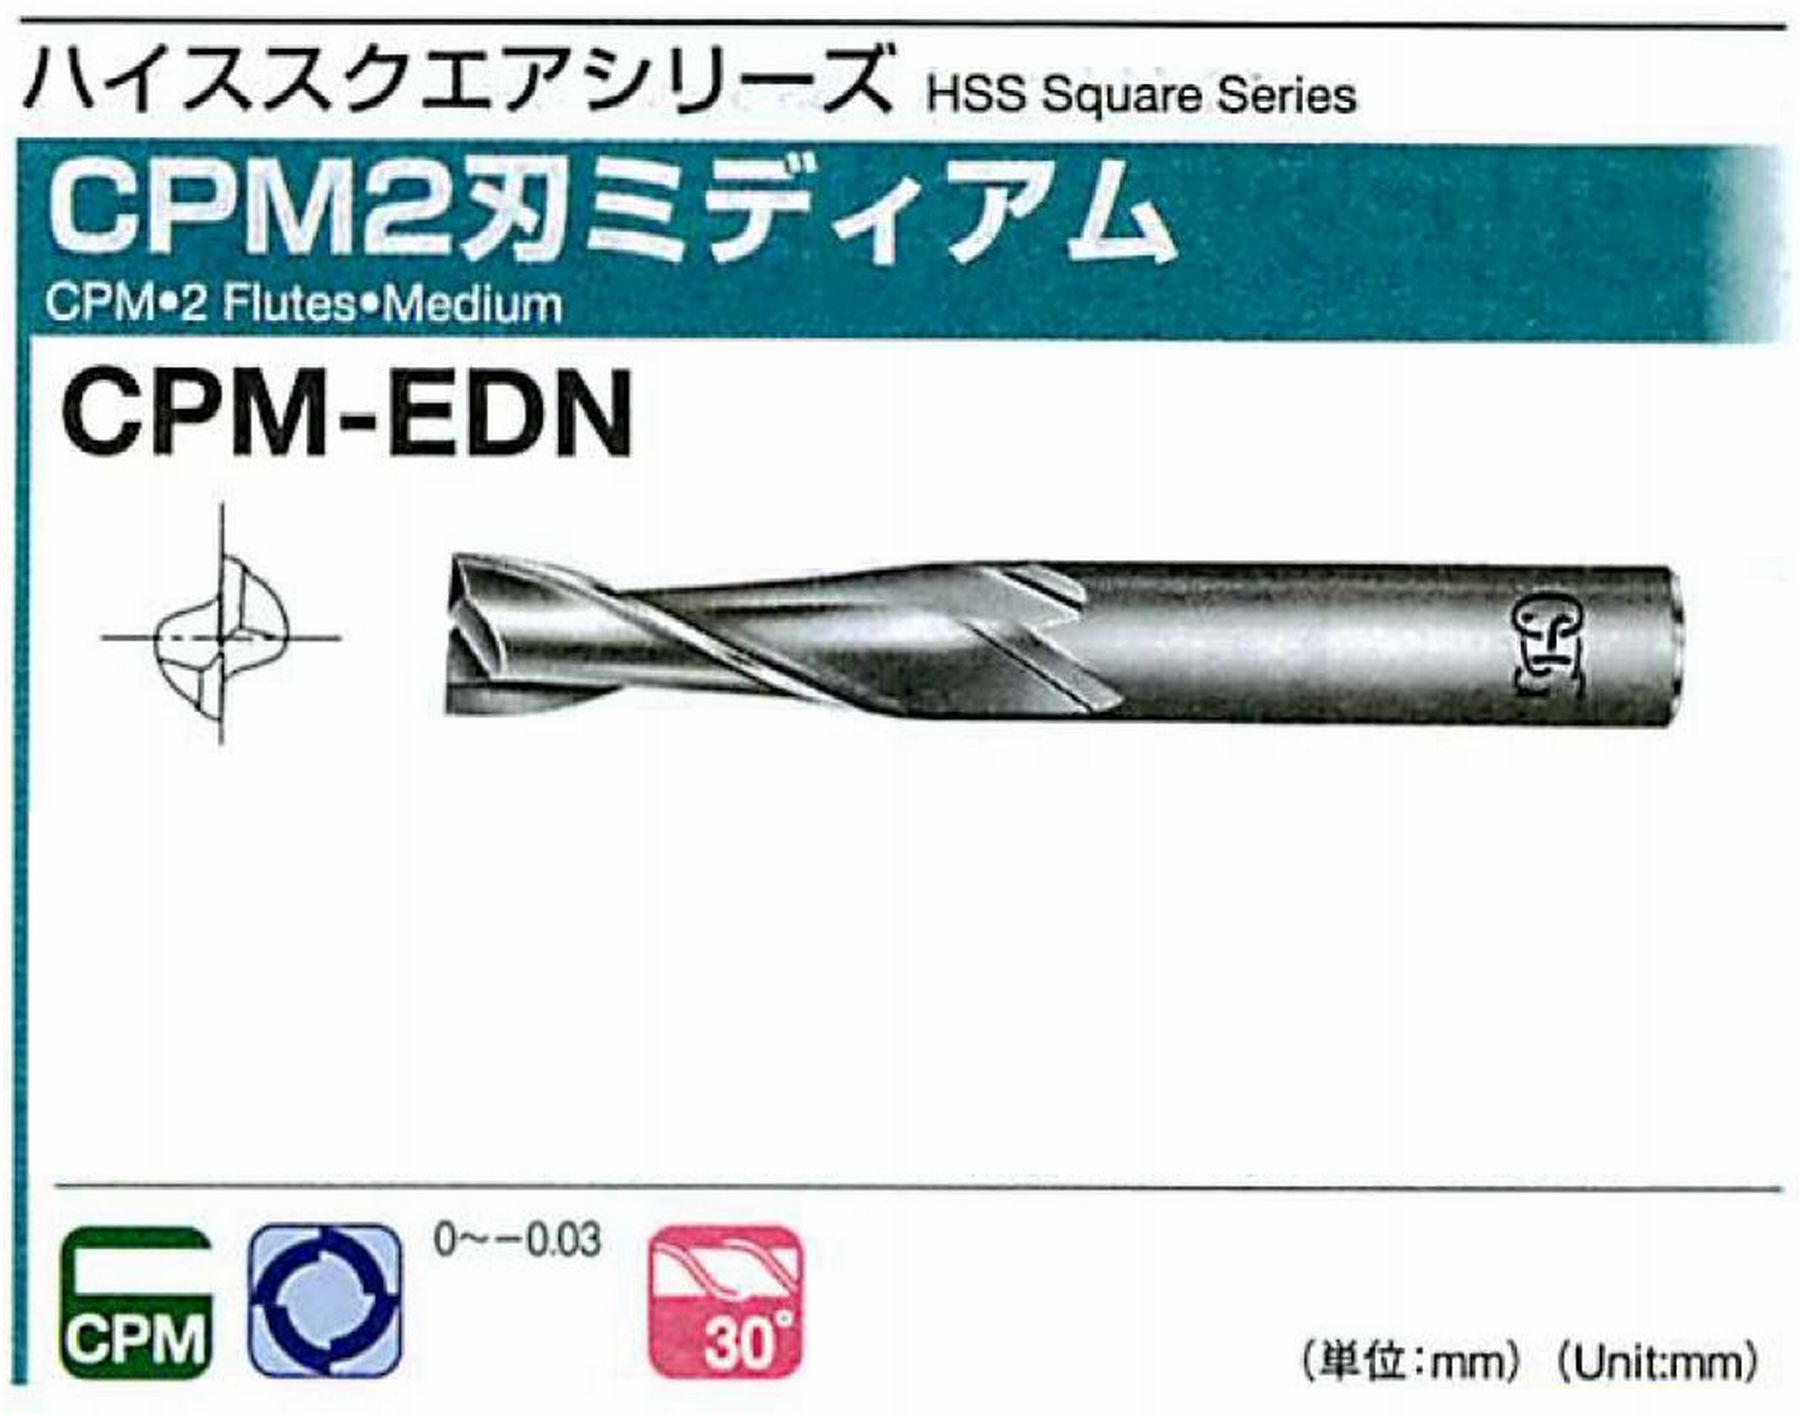 オーエスジー/OSG CPM2刃 ミディアム CPM-EDN 外径1 全長45 刃長3.5 シャンク径6mm